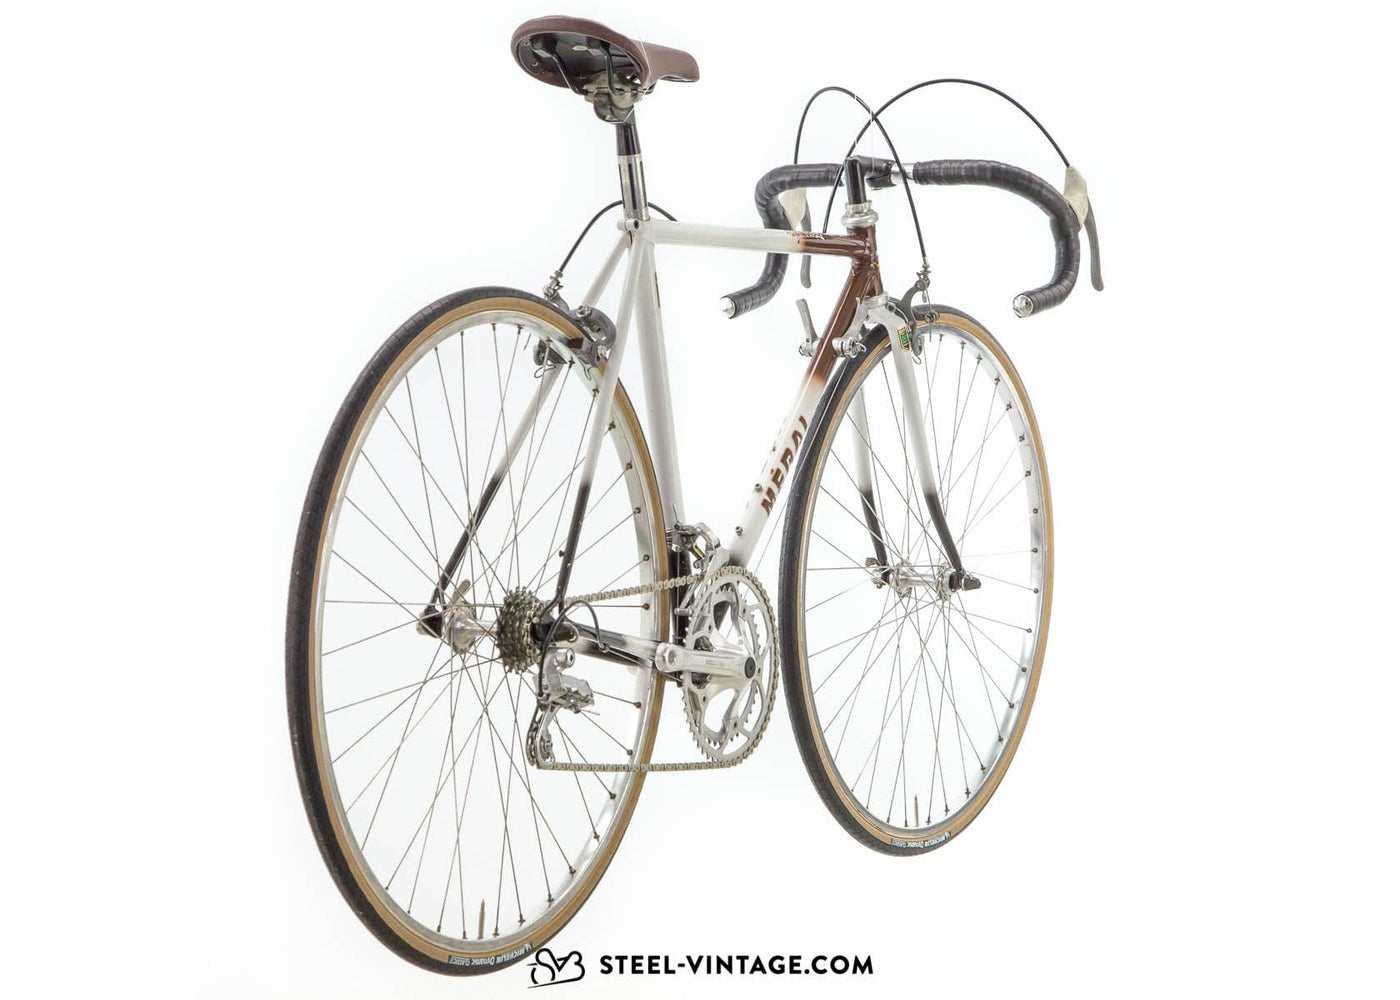 Méral Café Crème Road Bike 1980s - Steel Vintage Bikes